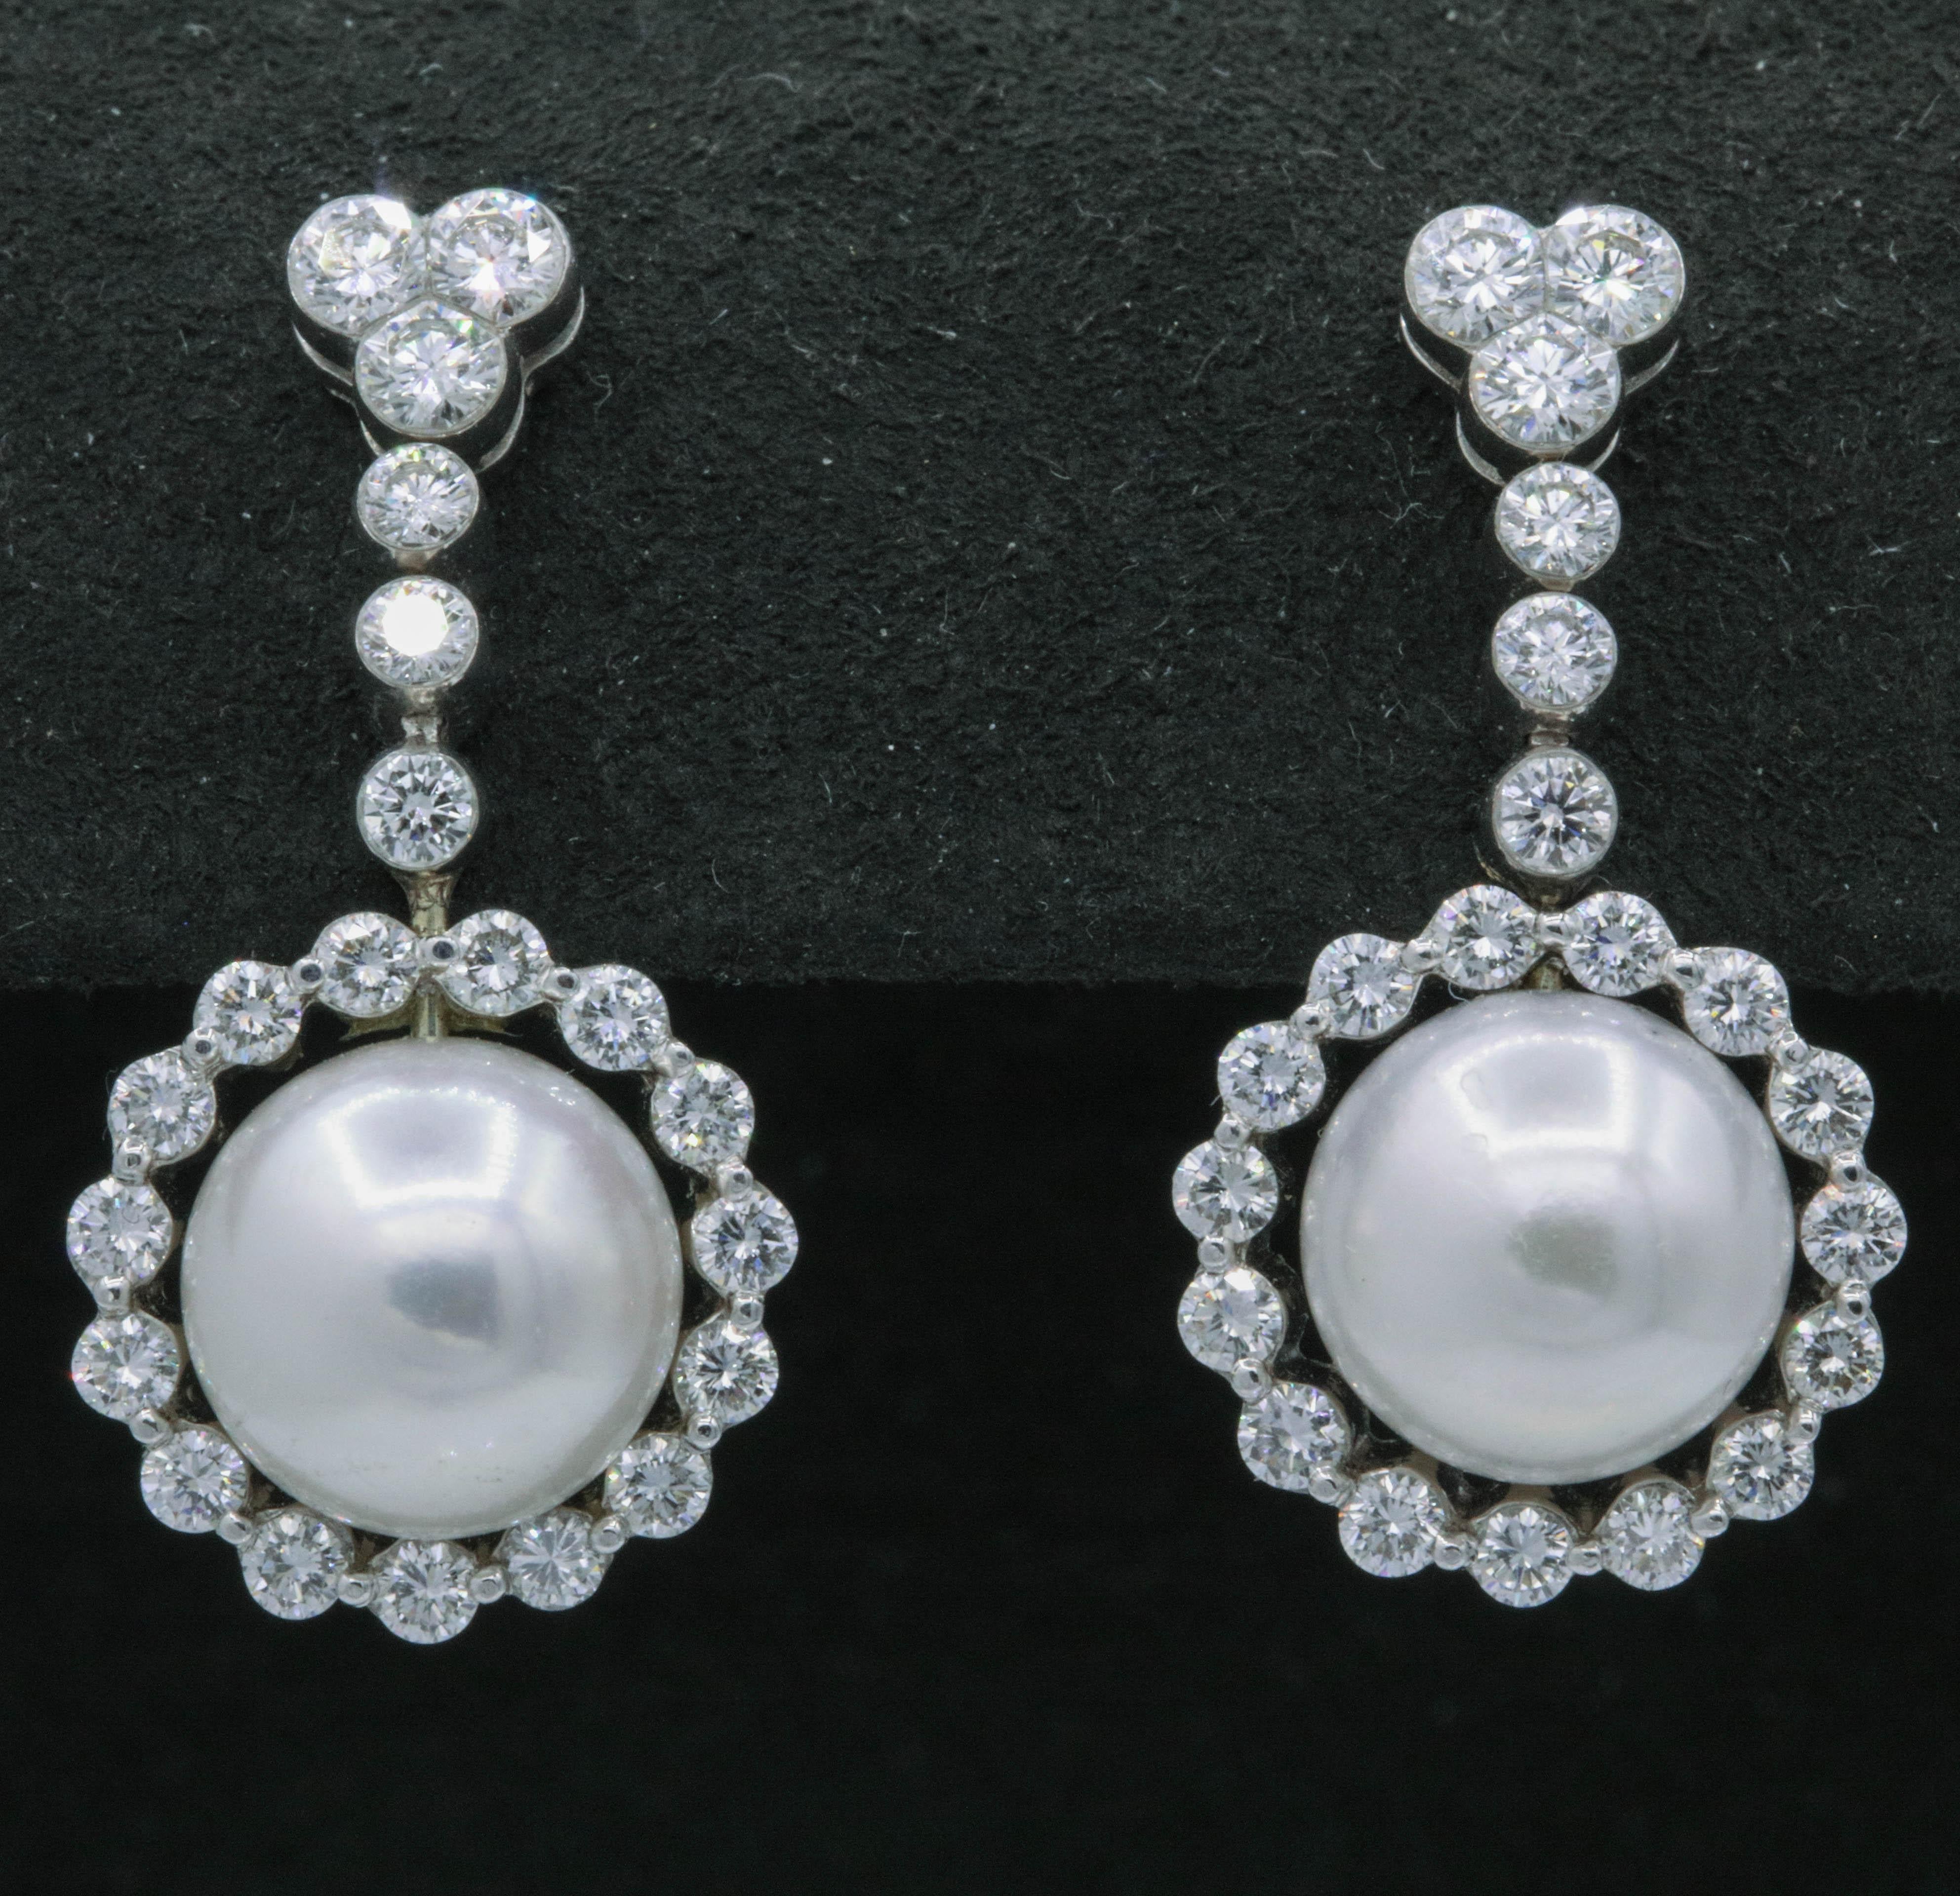 Diese eleganten Ohrringe bestehen aus zwei 9,5 mm großen Perlen, die von 42 runden Brillanten mit einem Gewicht von 1,55 Karat umgeben sind, und sind aus 18 Karat Weißgold gefertigt.  
Farbe: G-H
Klarheit: SI